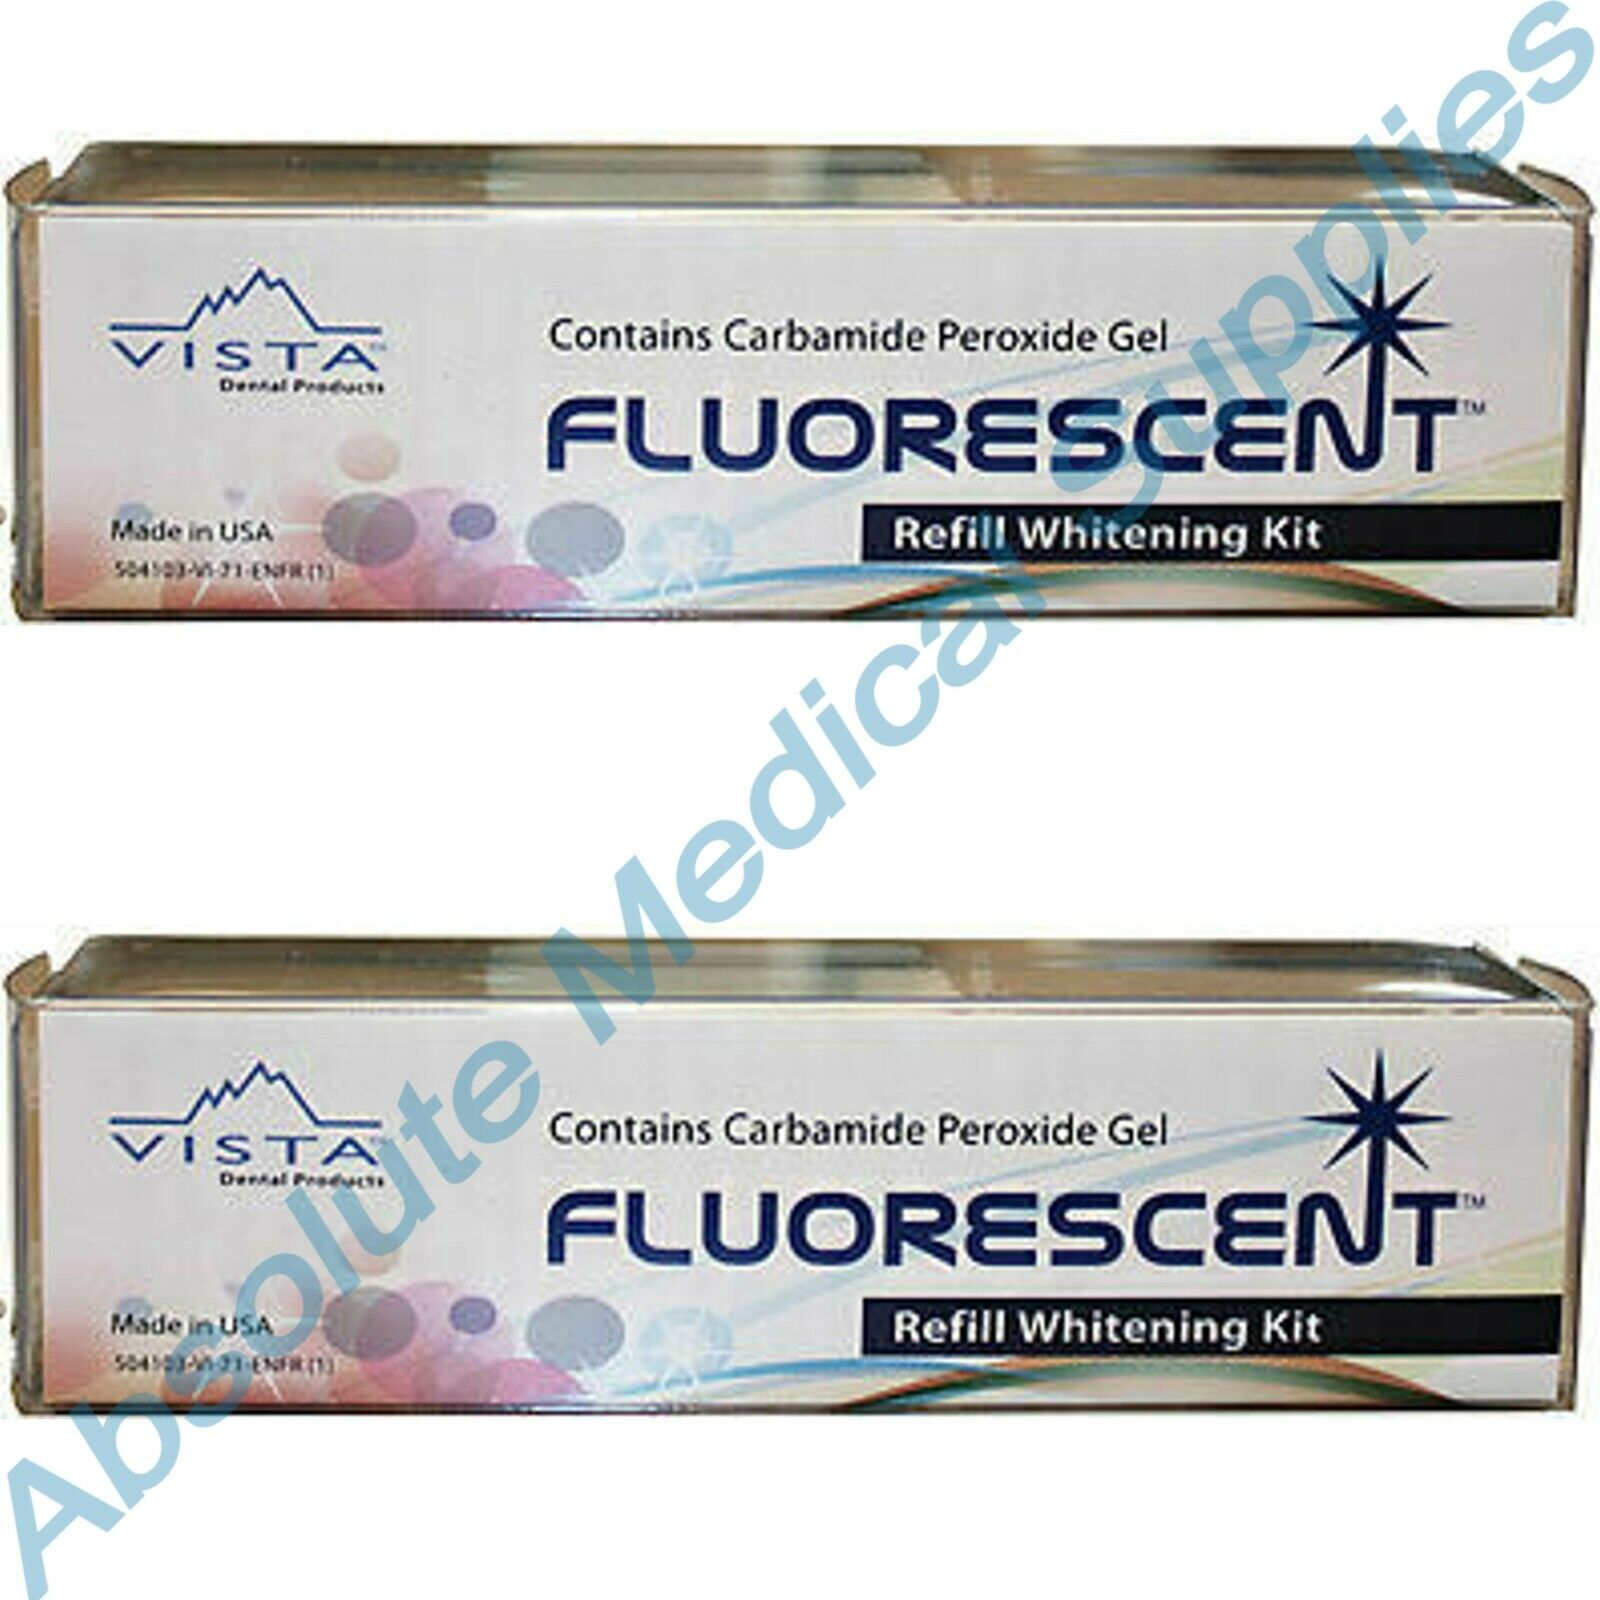 *8-Syringes* Vista Flourescent 16% Carbamide Gel Refill Whitenin